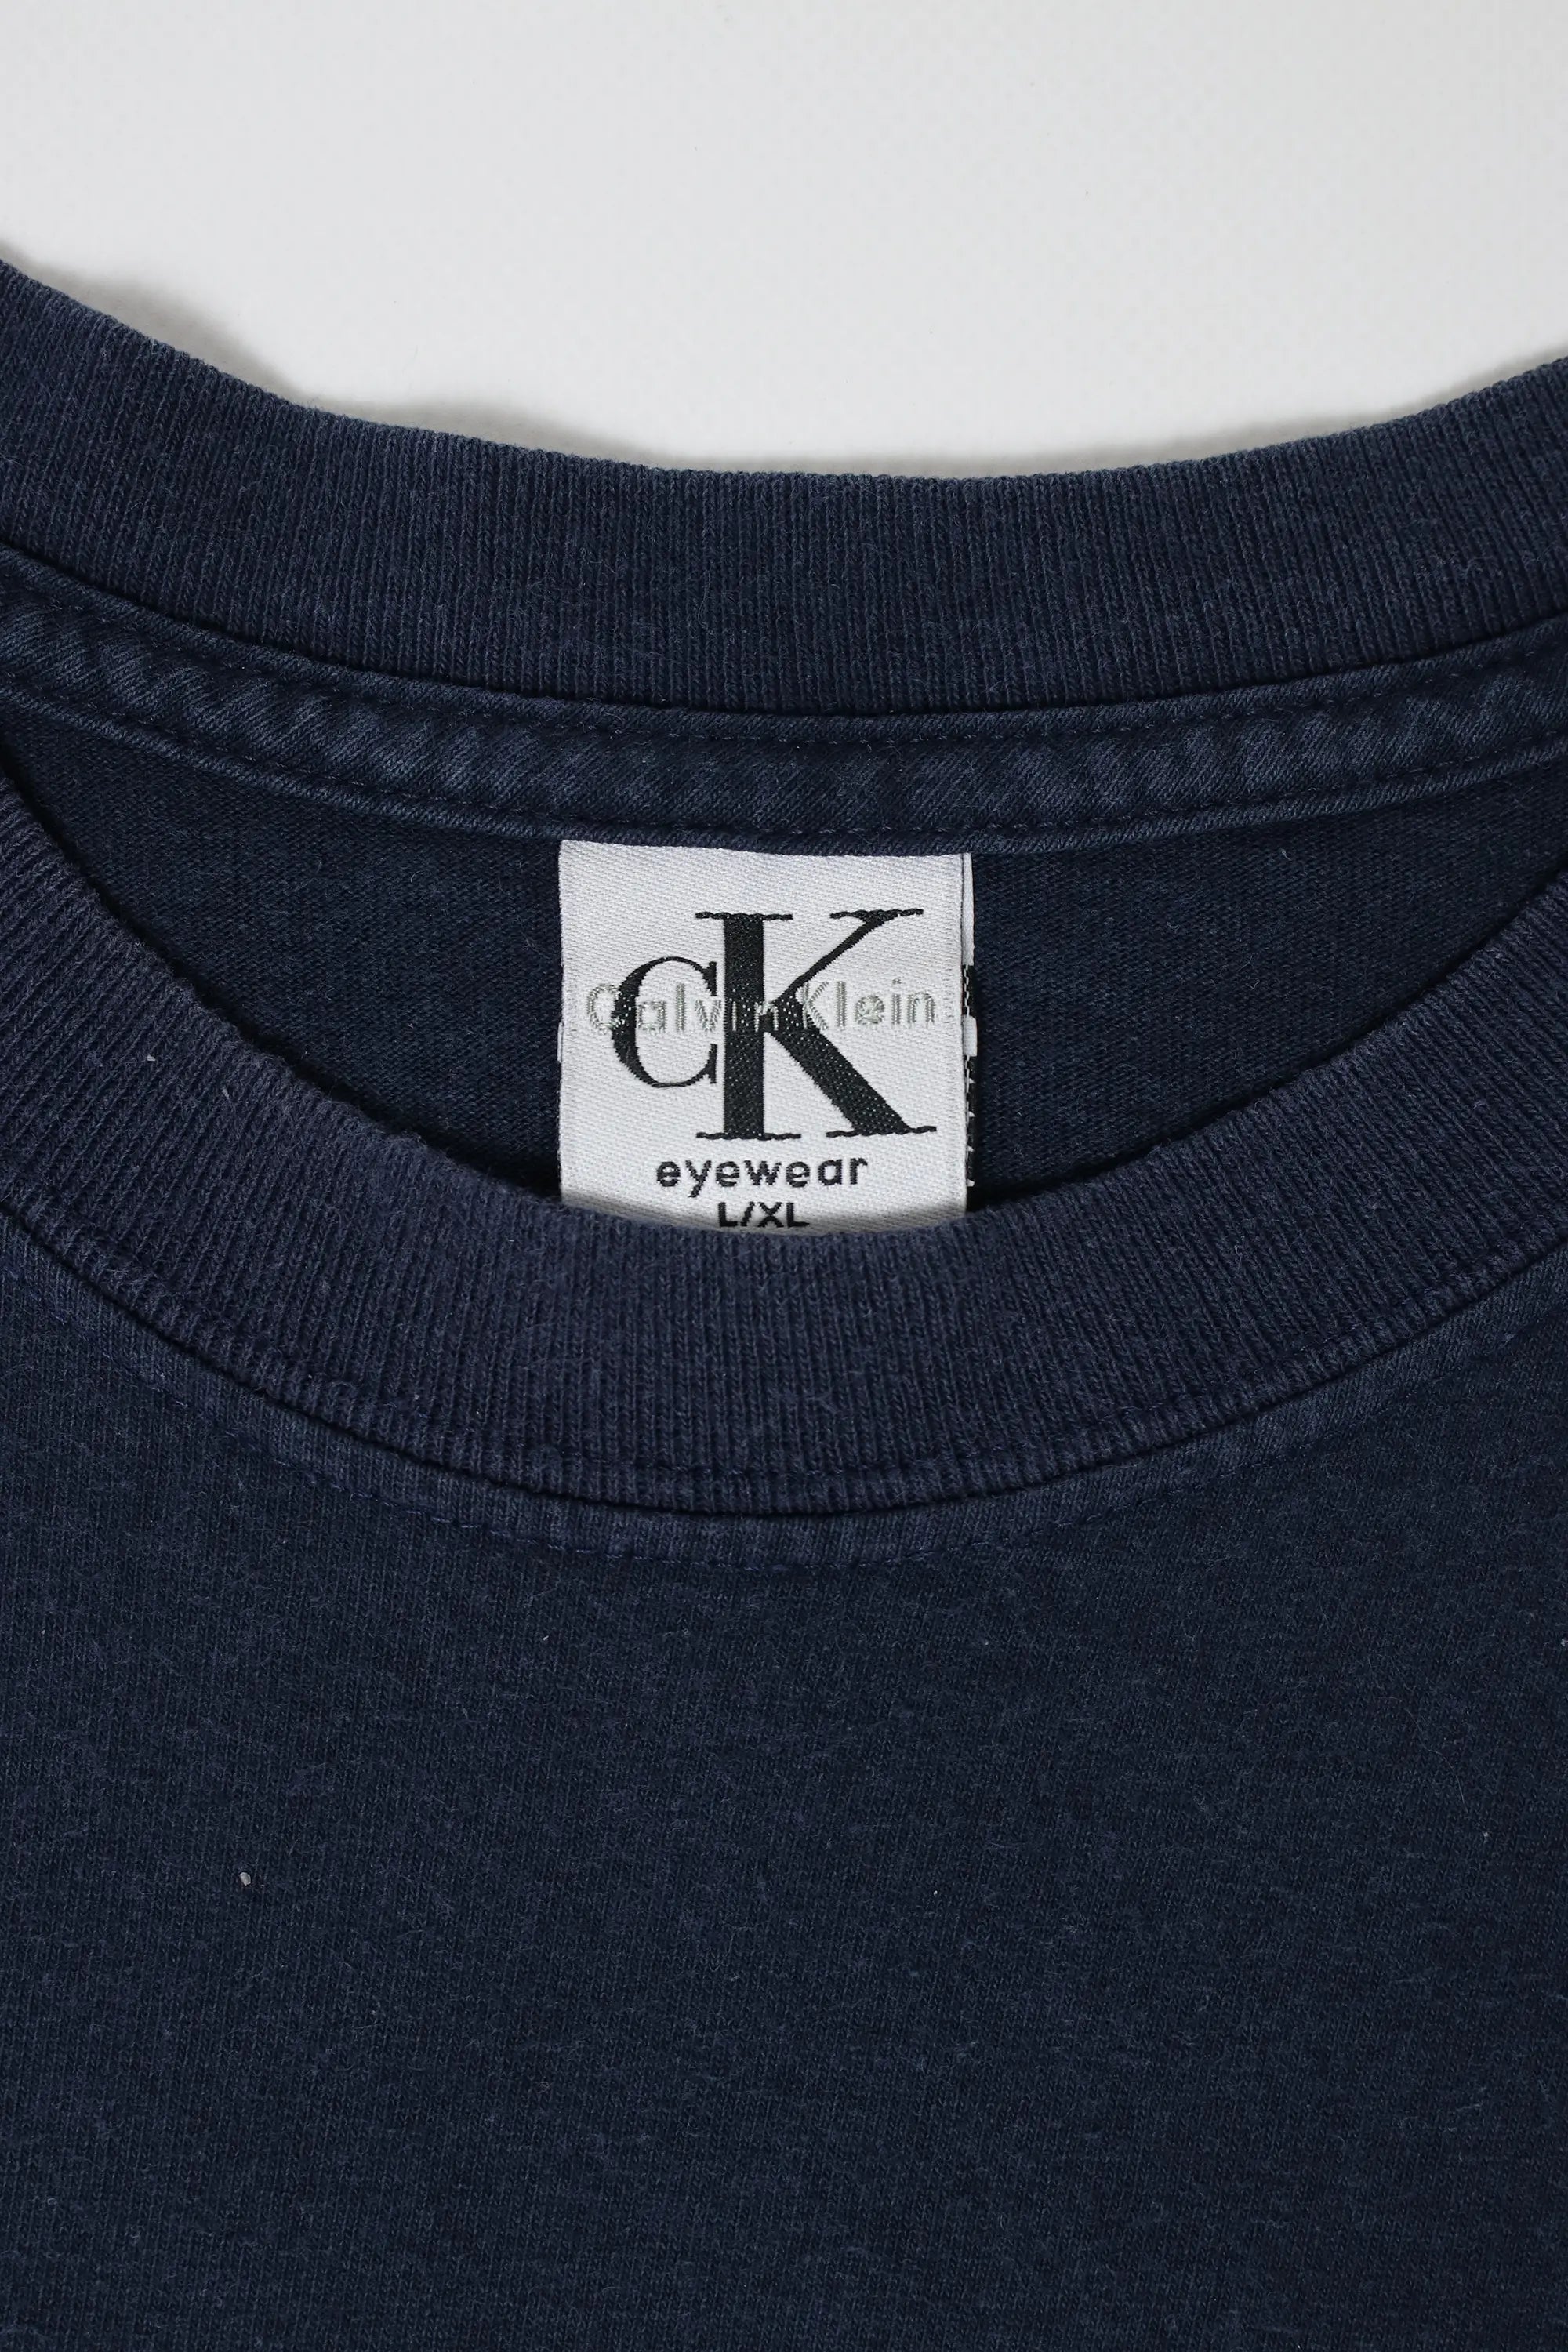 CK Eyewear Logo T.